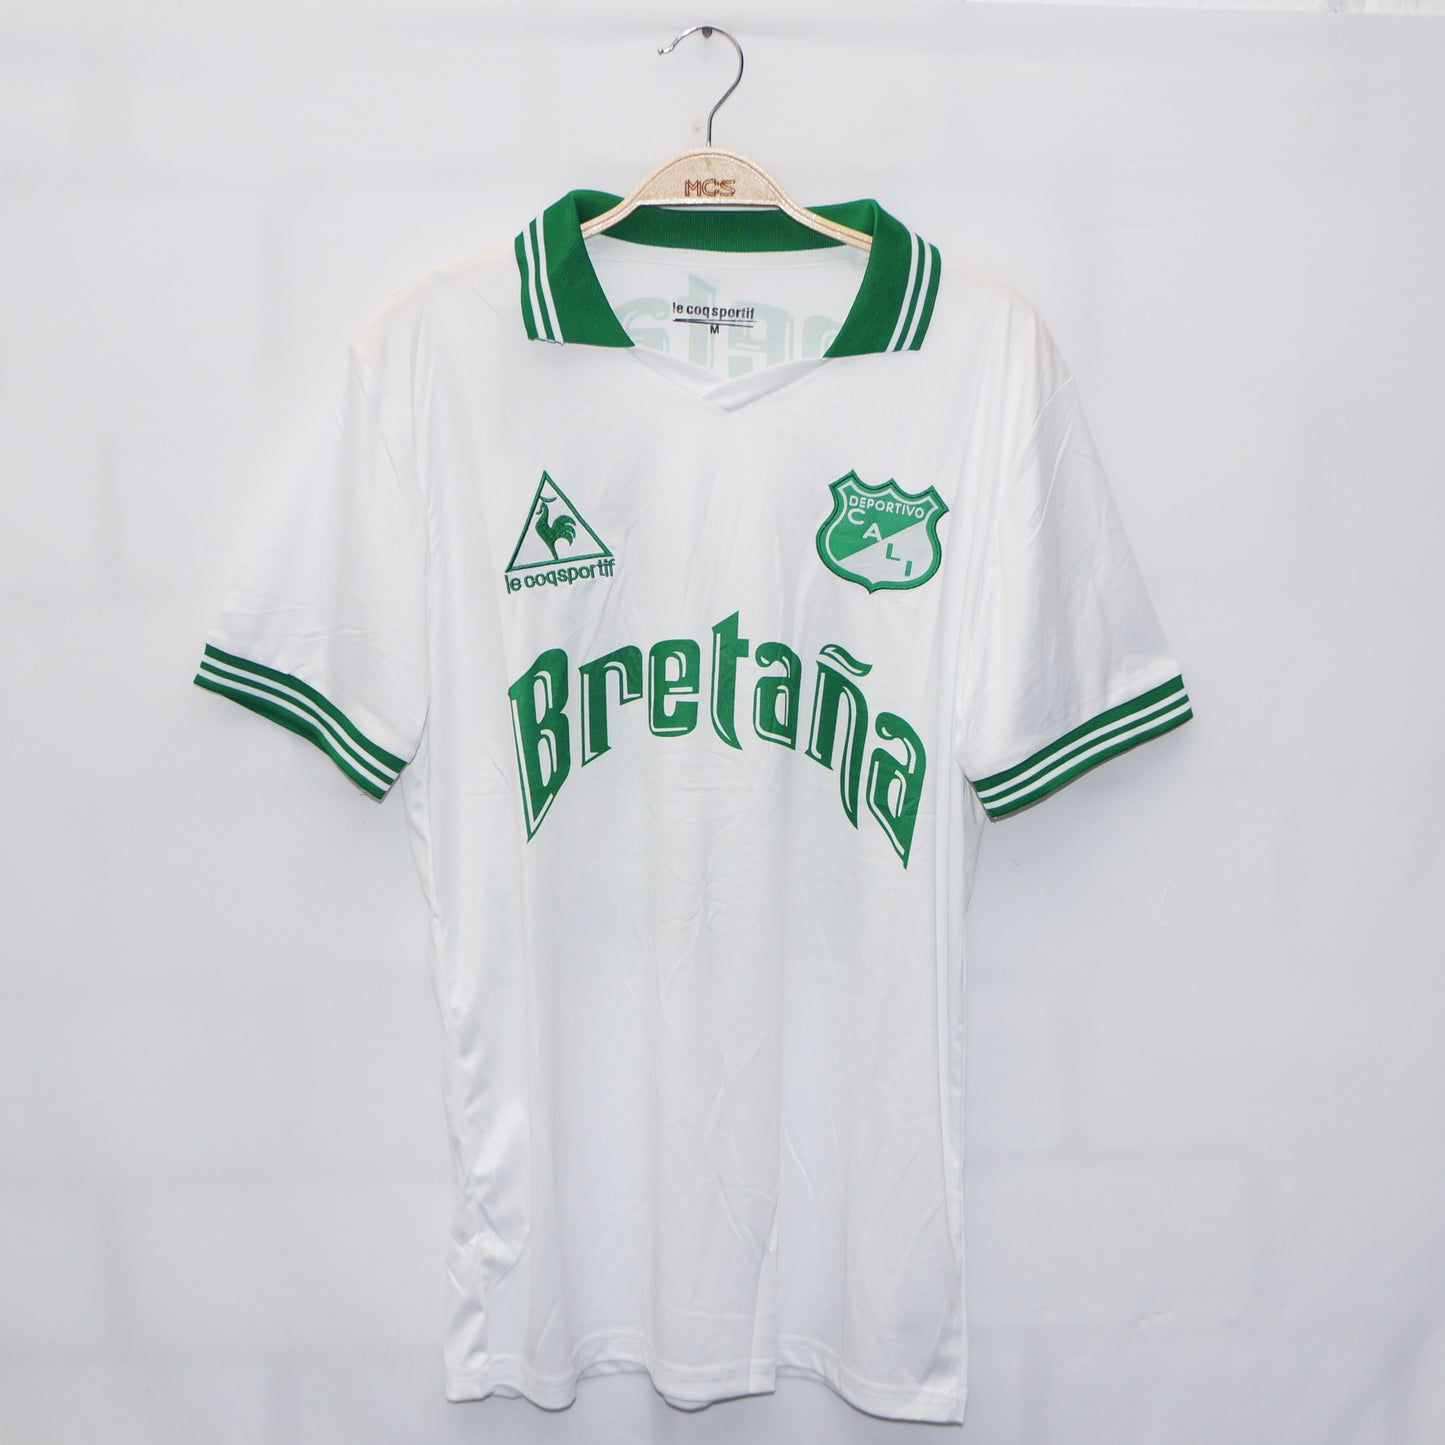 Camiseta Deportivo Cali 1987 Le coq  Visitante Vintage